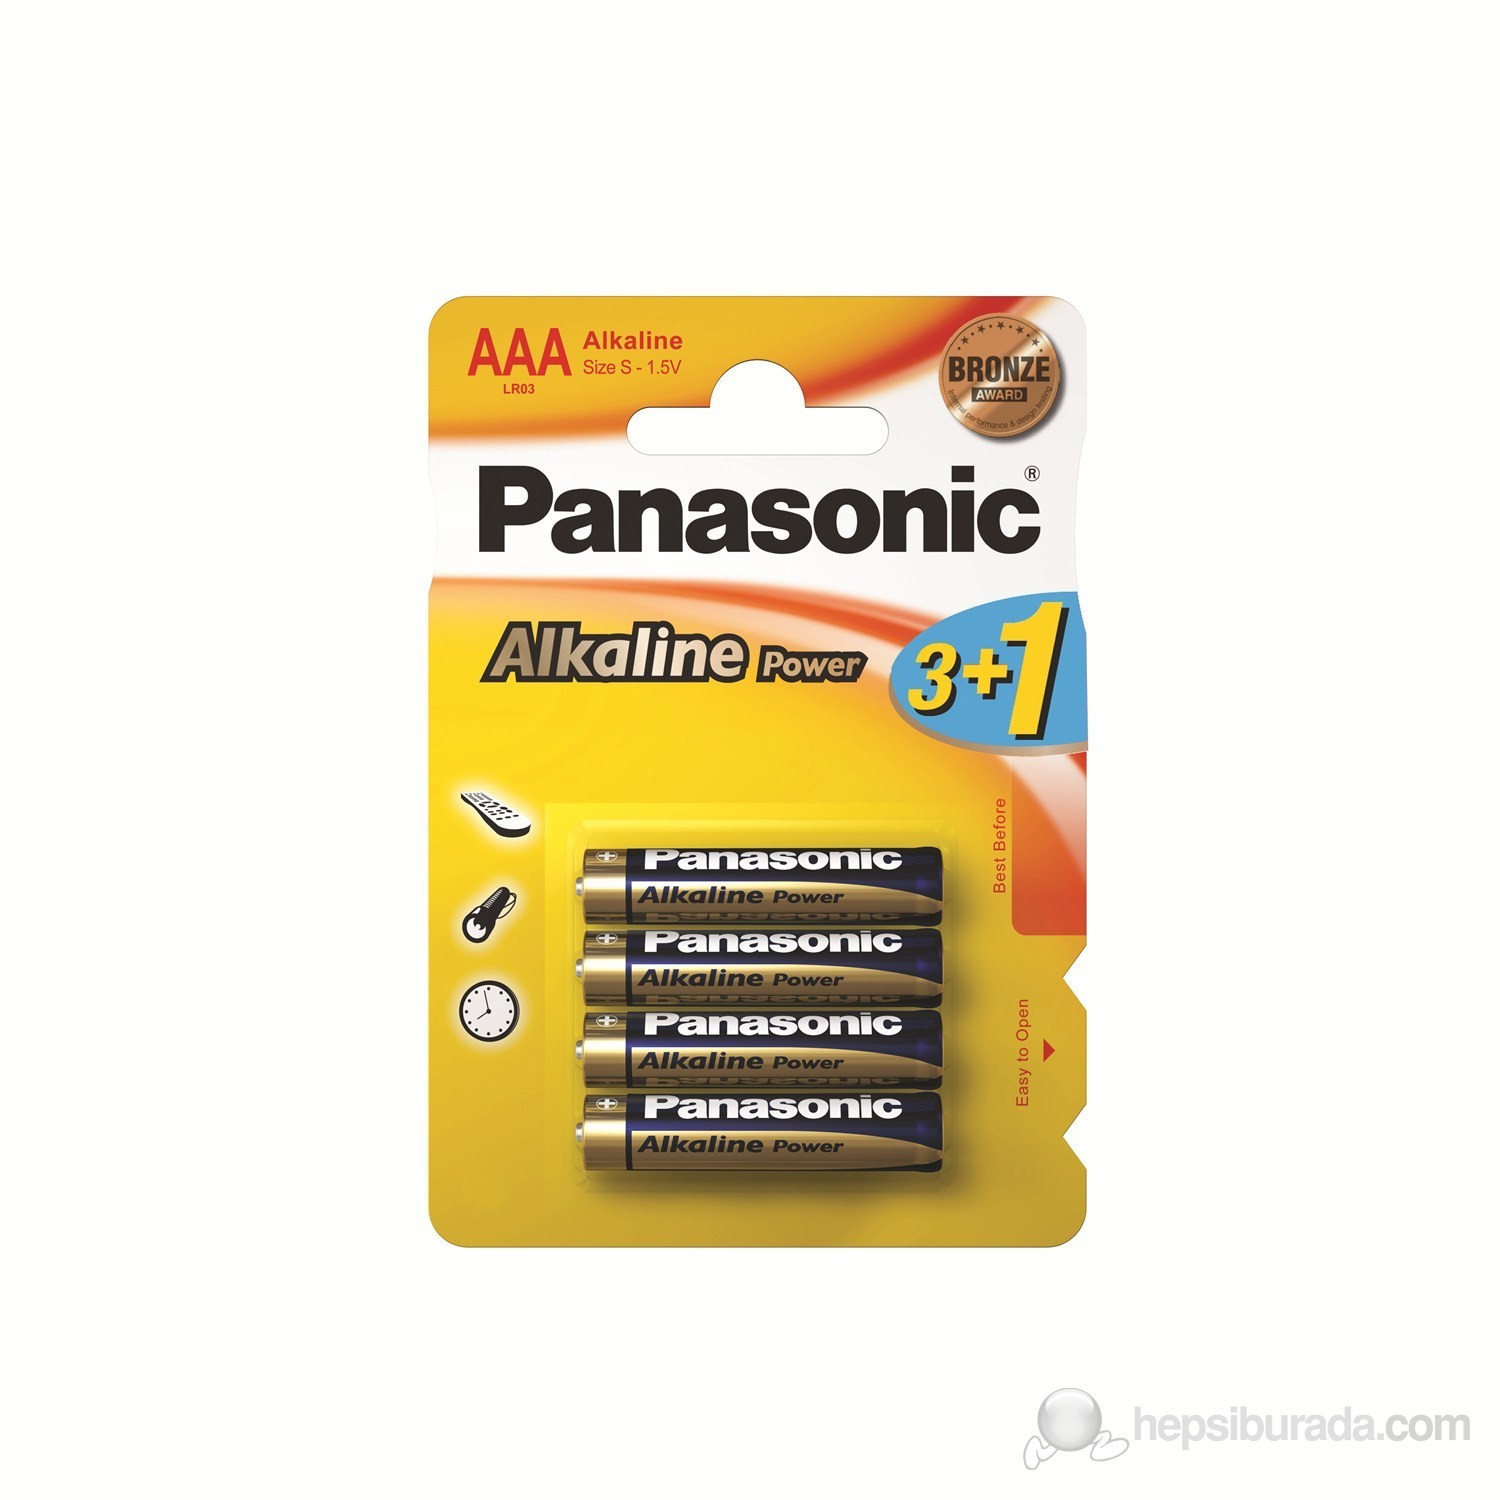 Panasonic Alkaline Power AAA Alkalin Pil 4'lü Paket